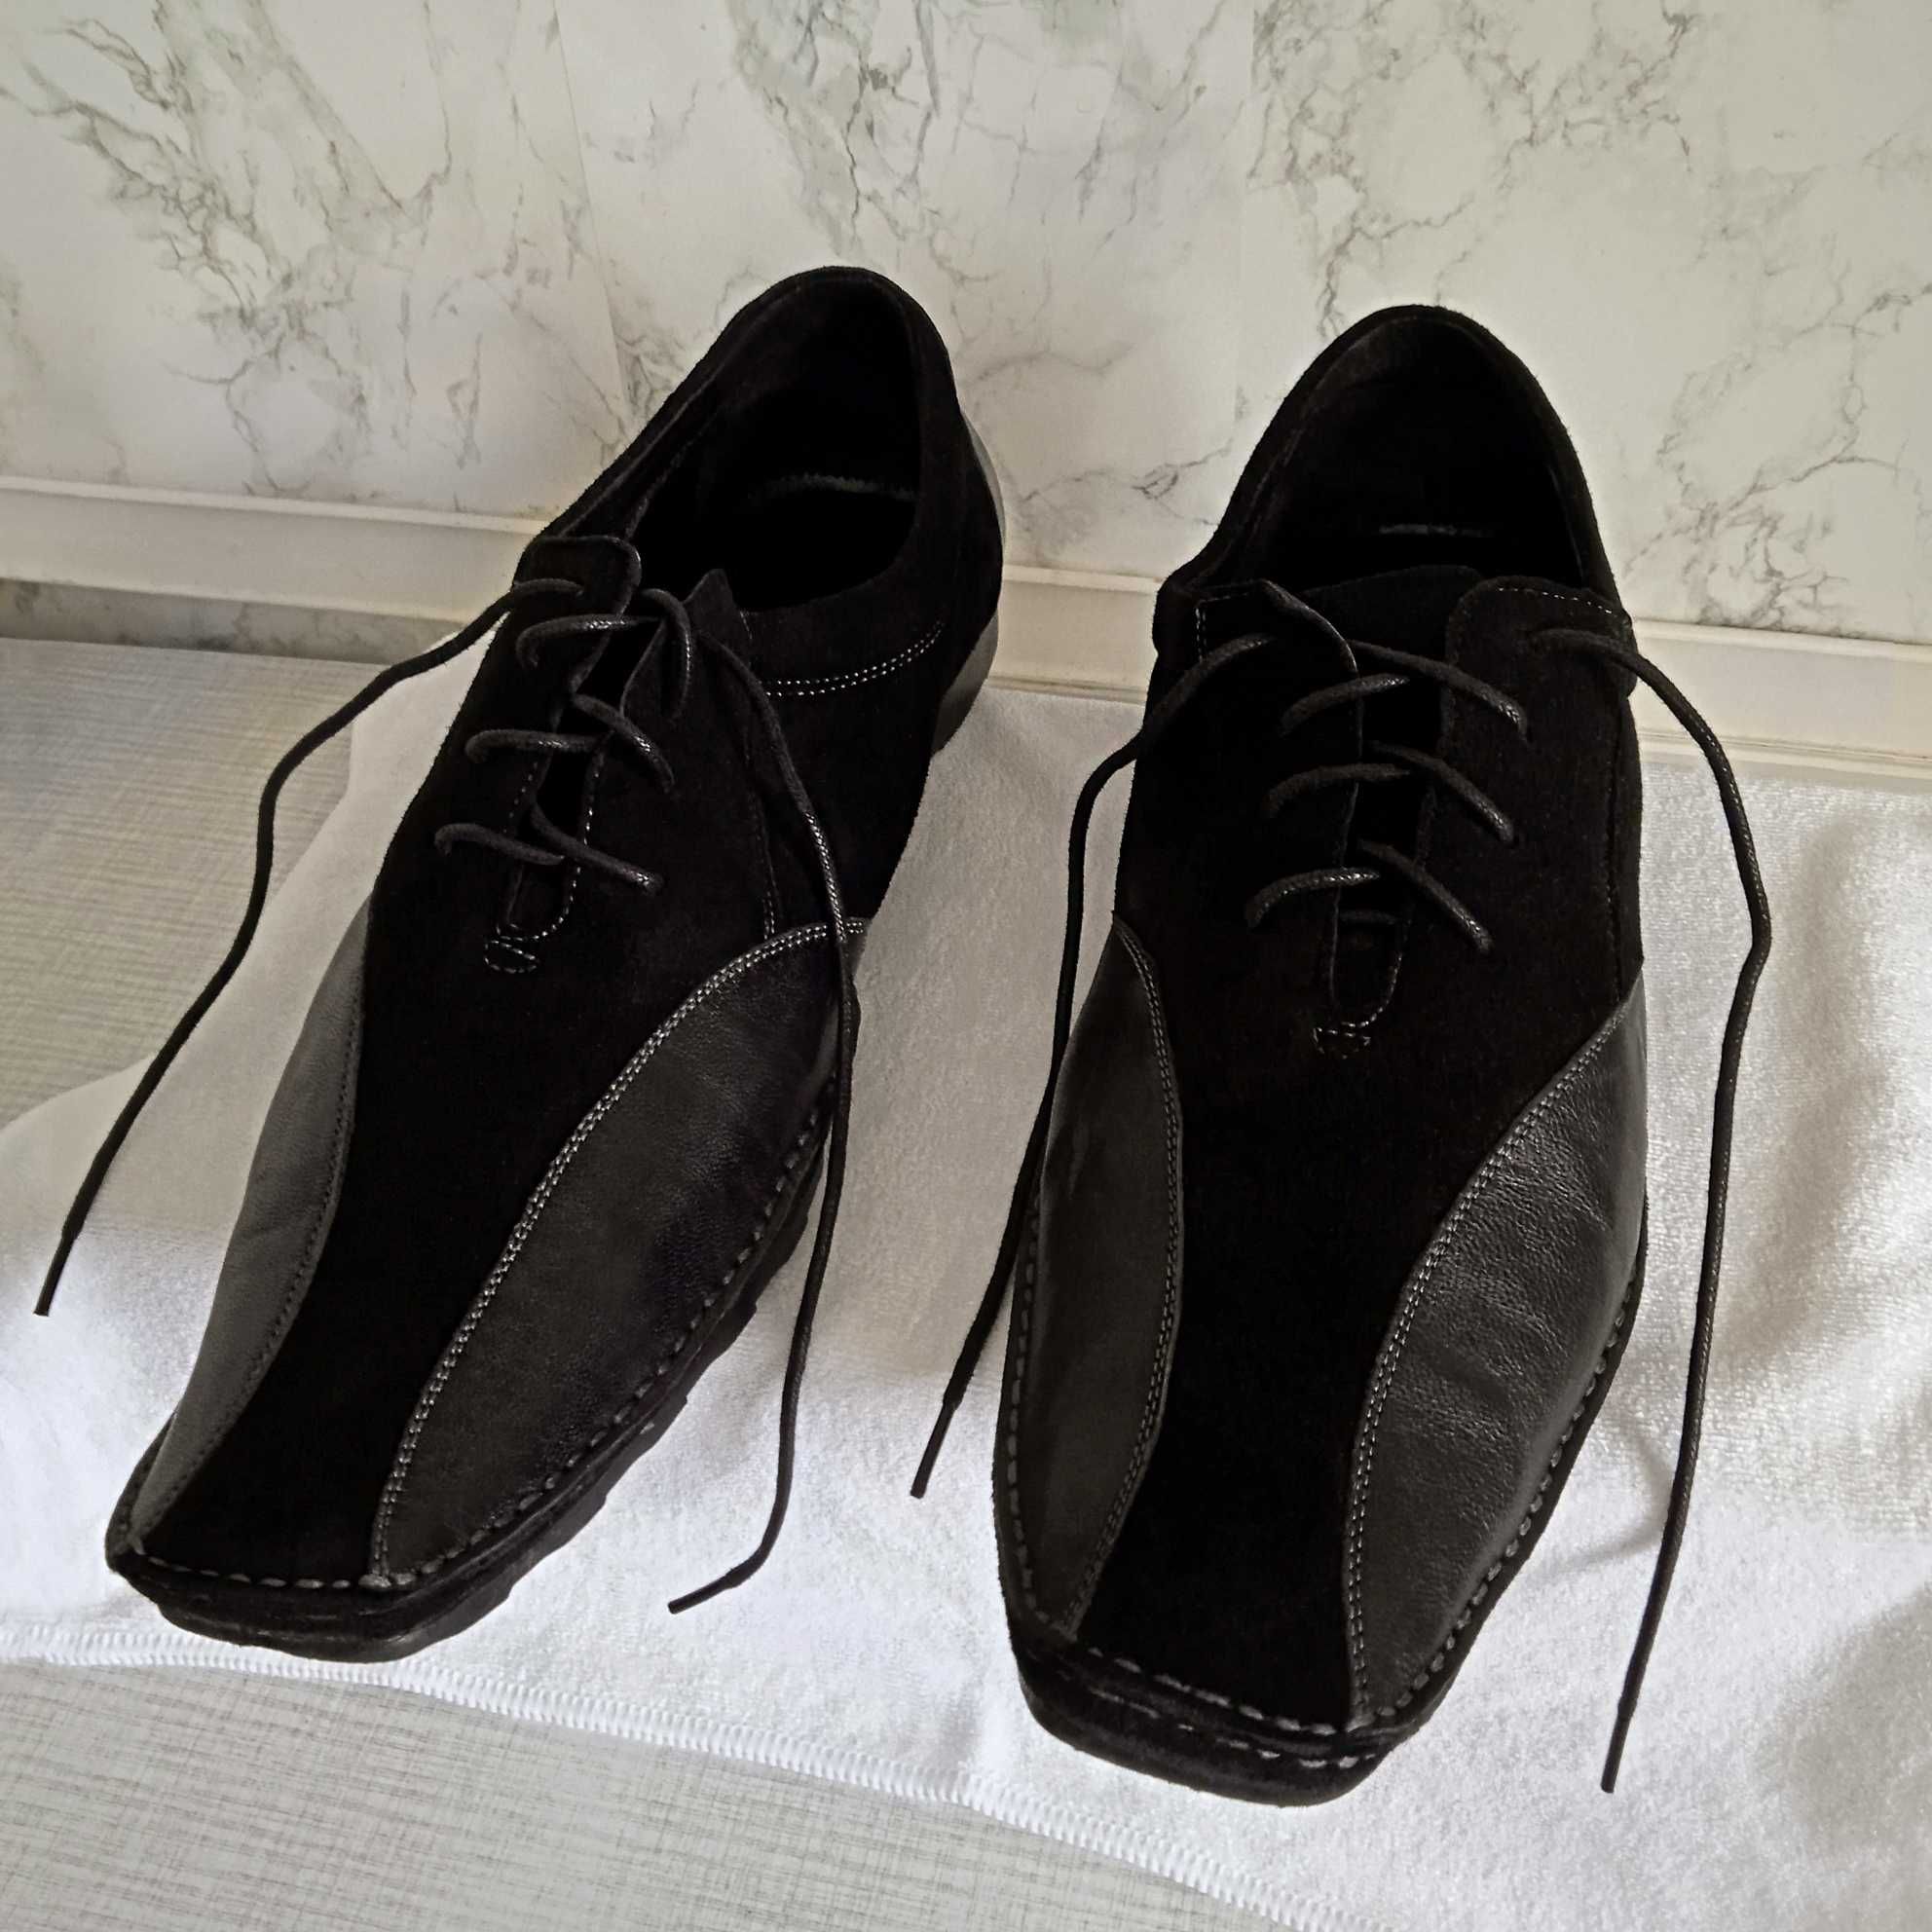 Мужские кожаные туфли 44 размер Carlo Fabino Италия черные кожа замша